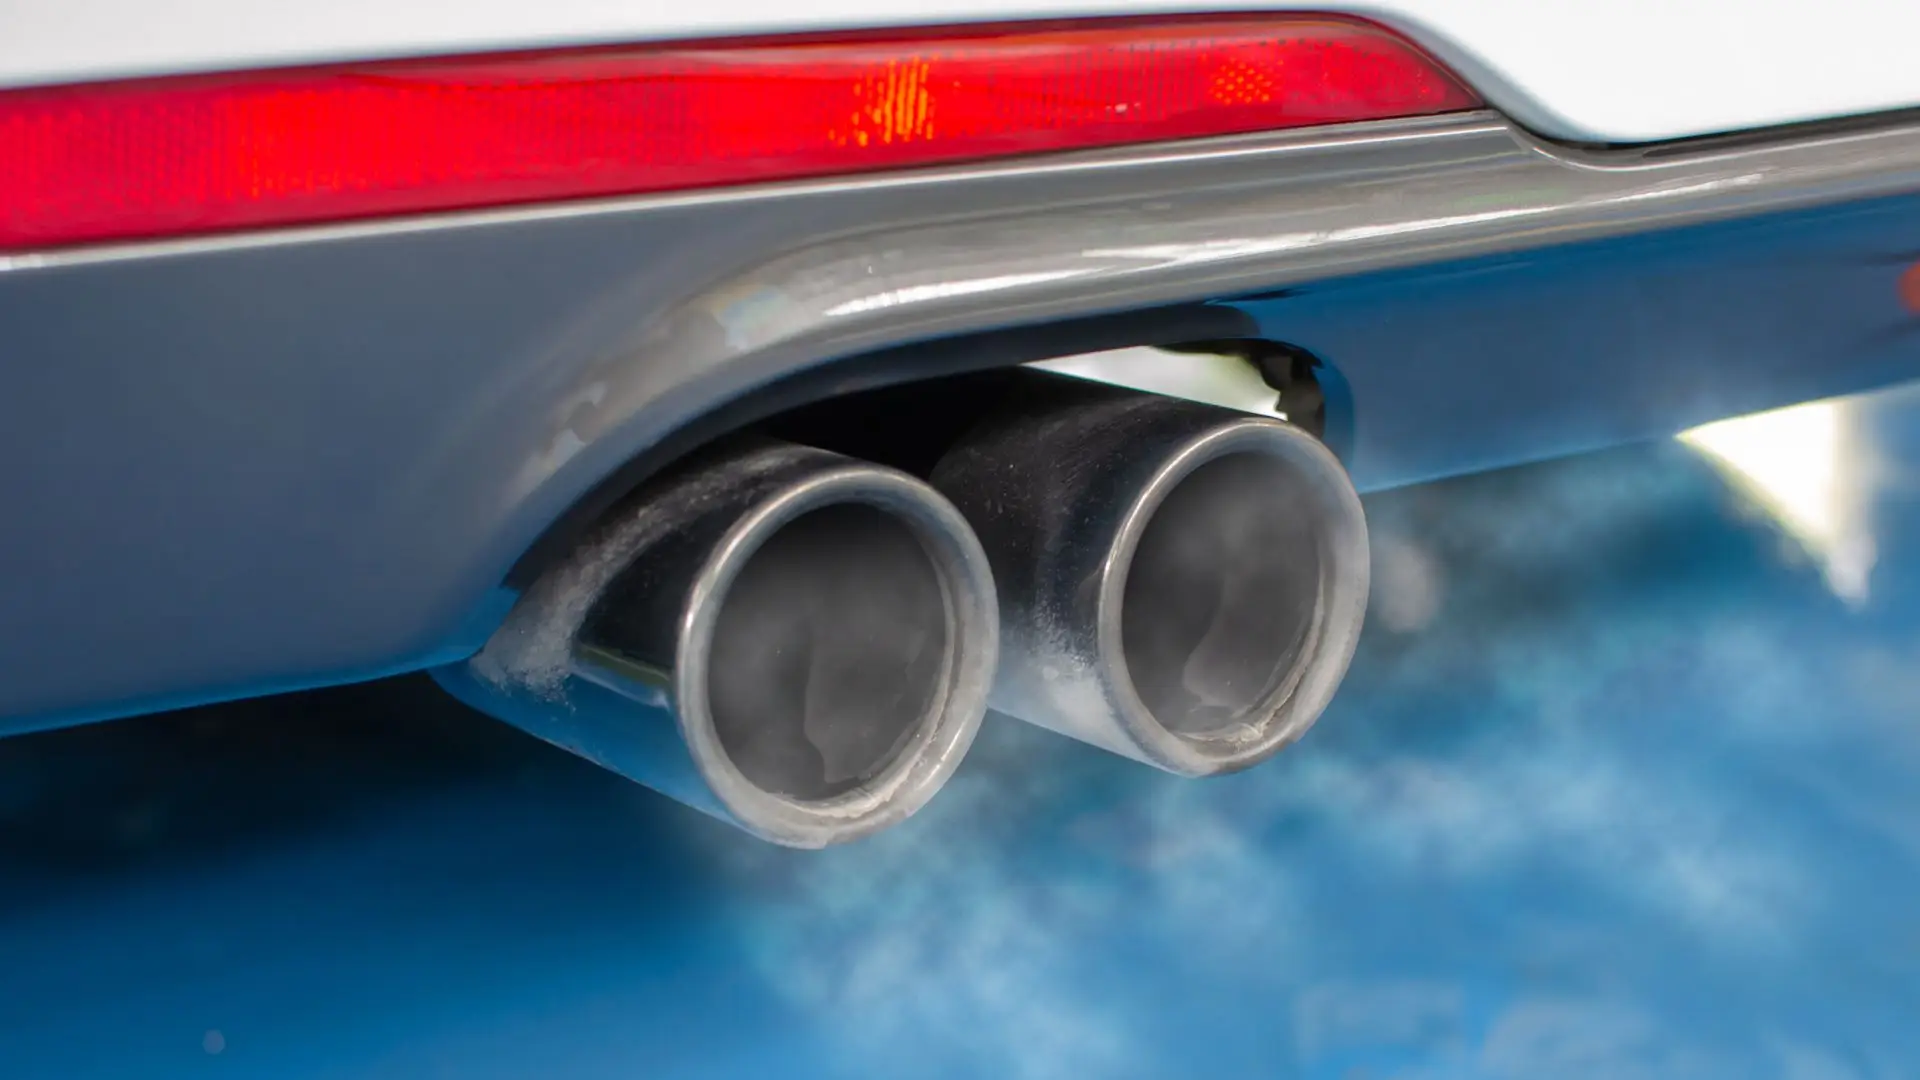 Veículos Elétricos - Os Carros Verdes - Emissão Zero de Carbono